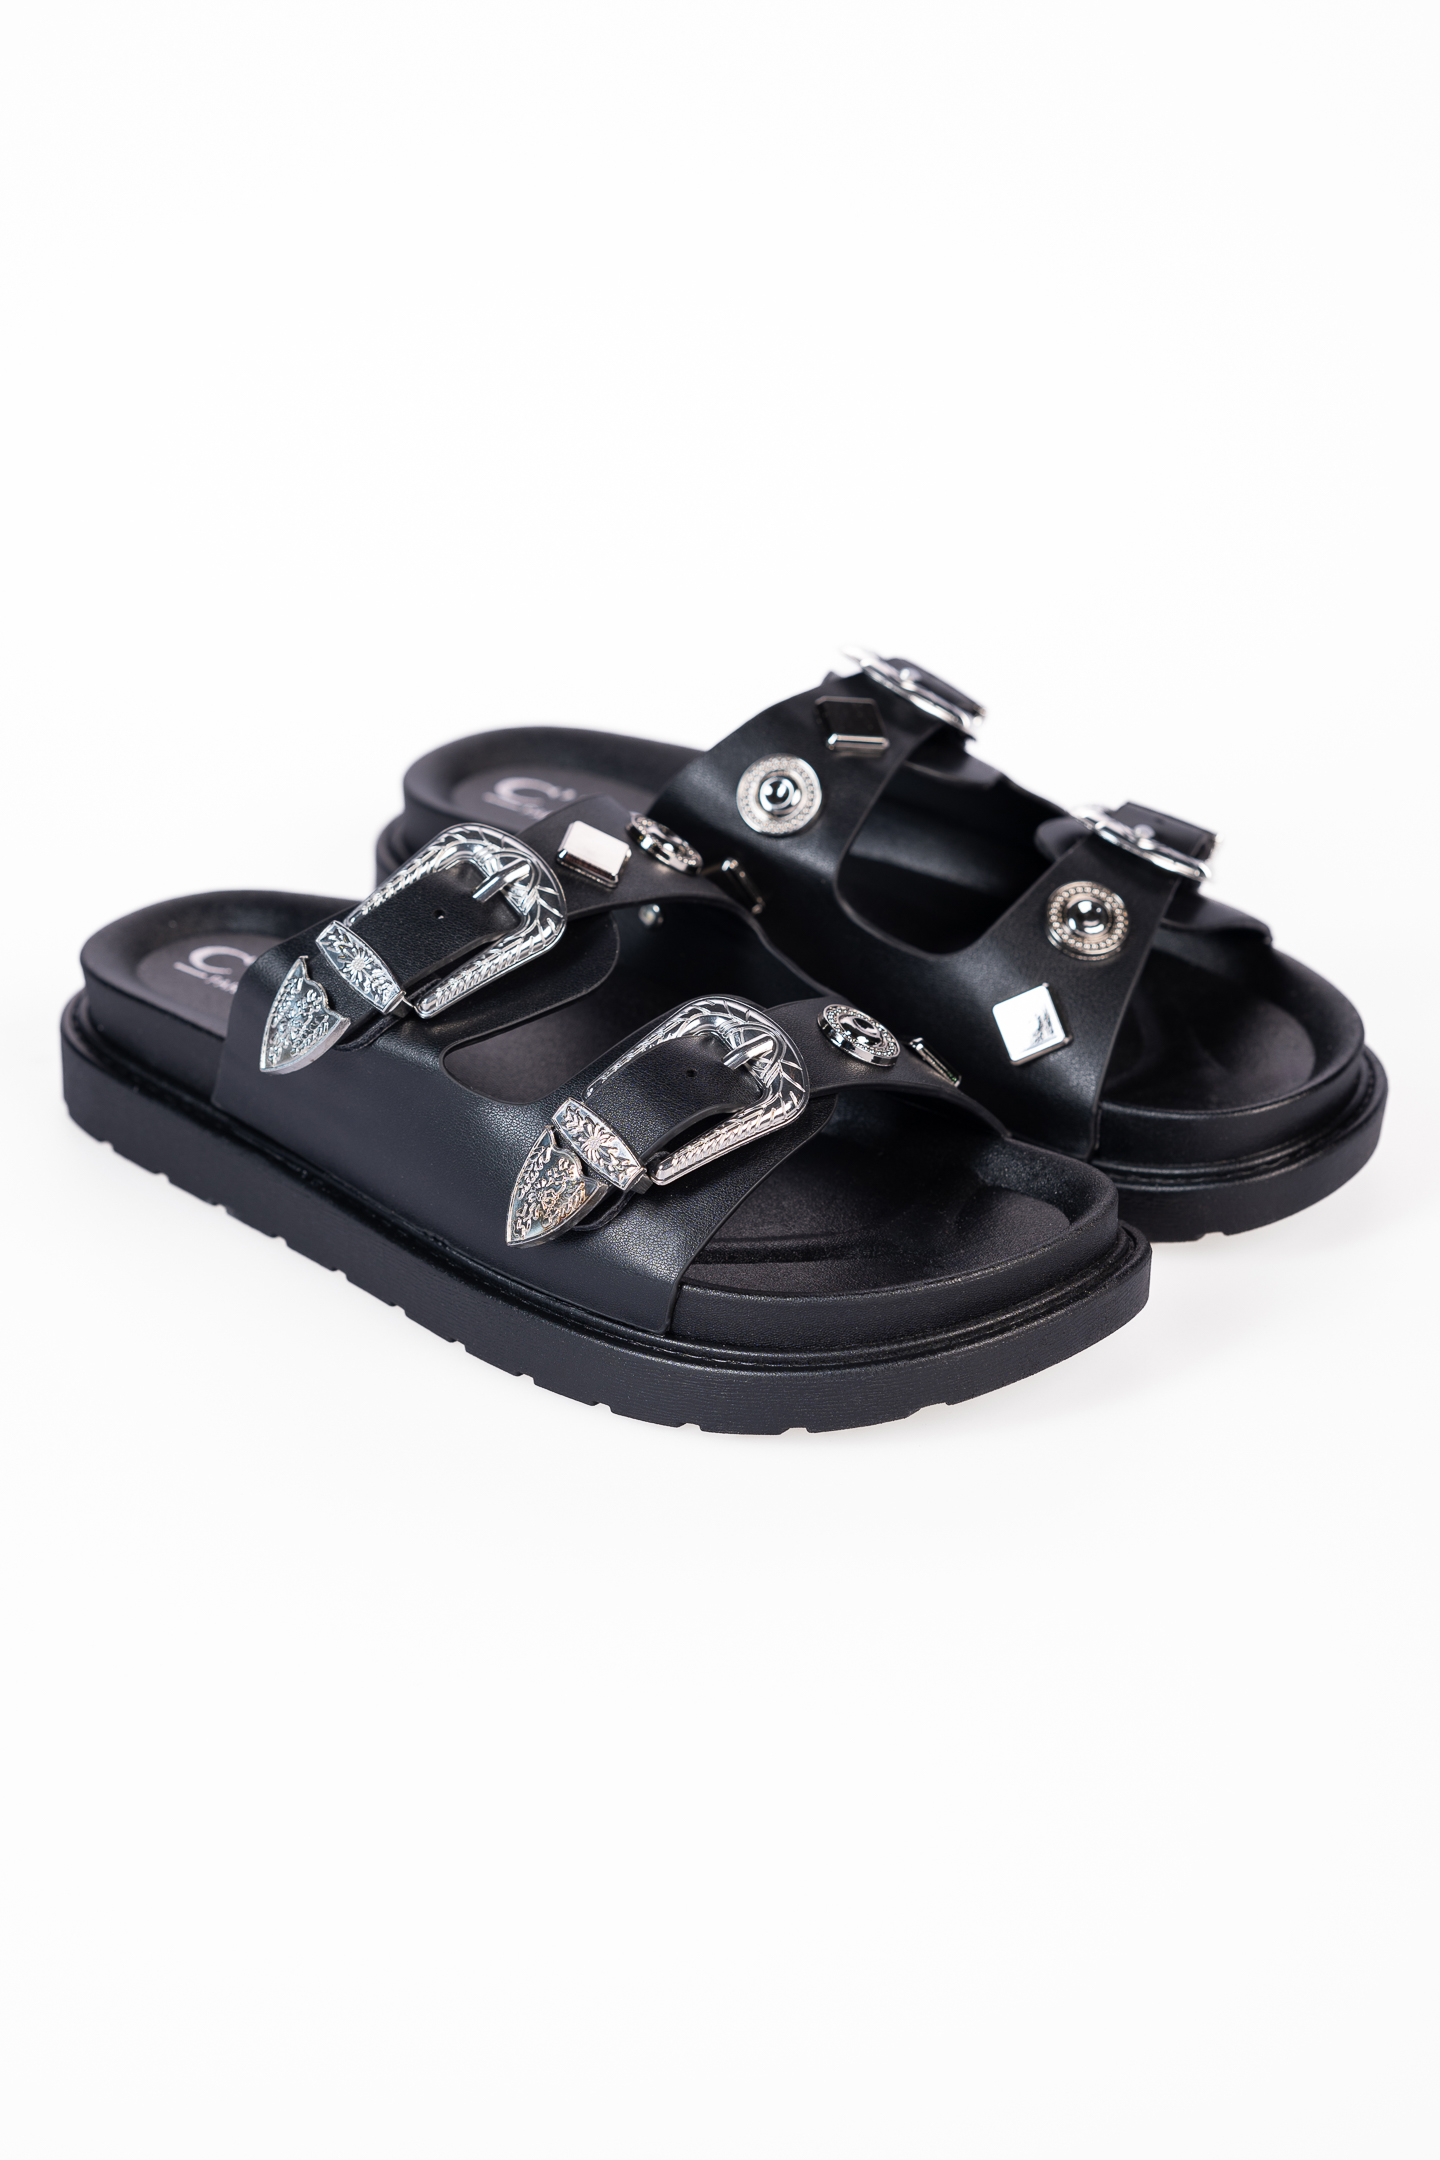 Παπούτσια > Σανδάλια Σανδάλια flatform με αγκράφες και μεταλλικά στοχεία - Μαύρο